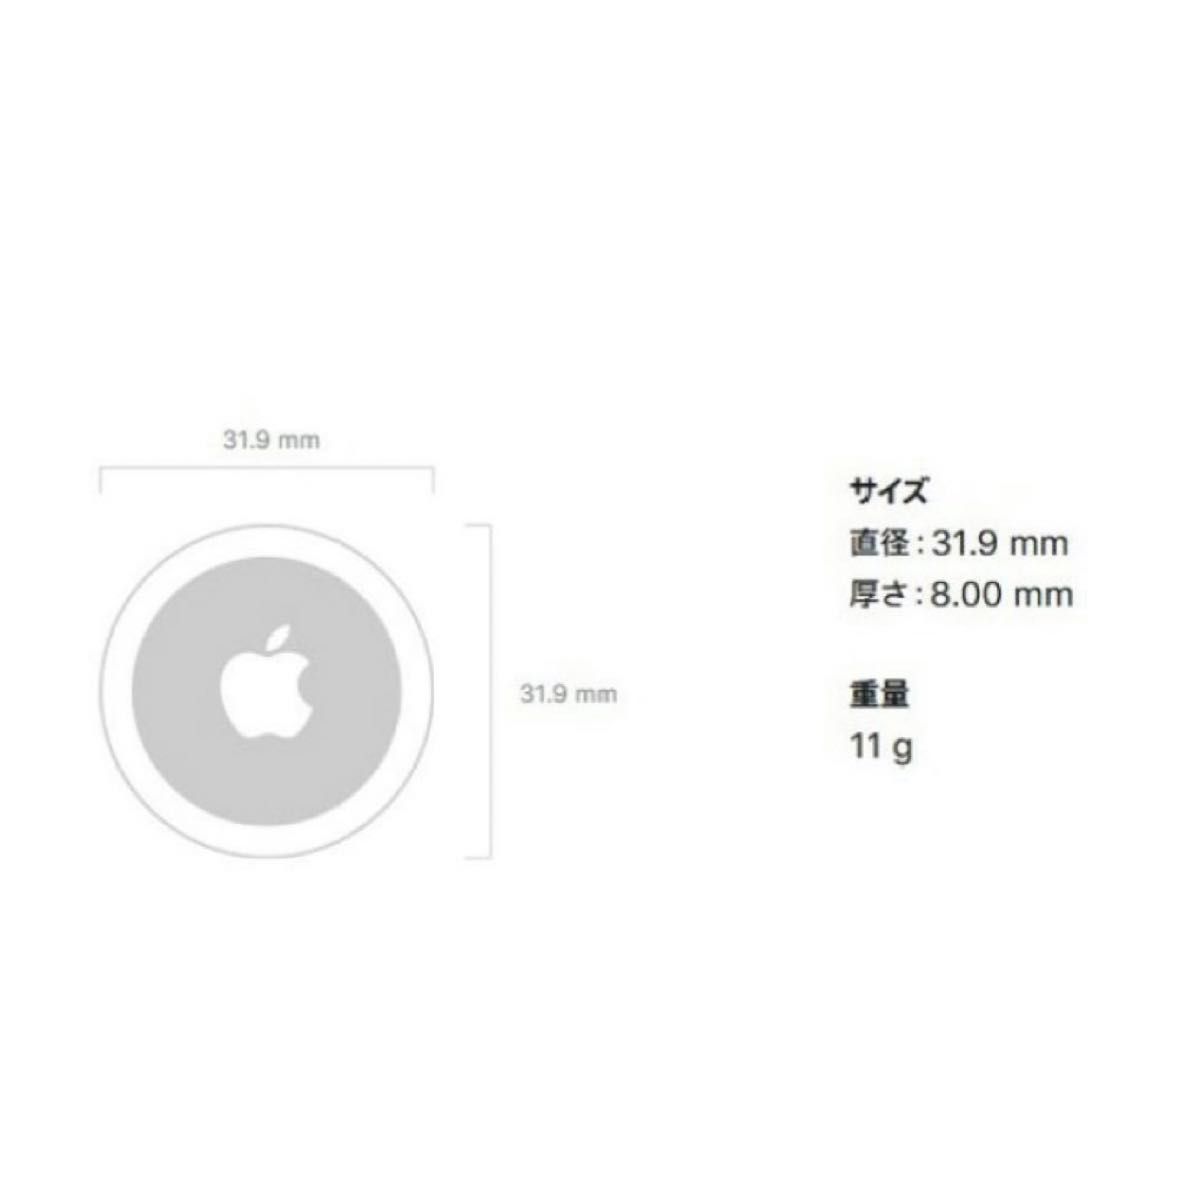 【新品未使用】 AirTag 2個 apple 最安値 【即日発送】